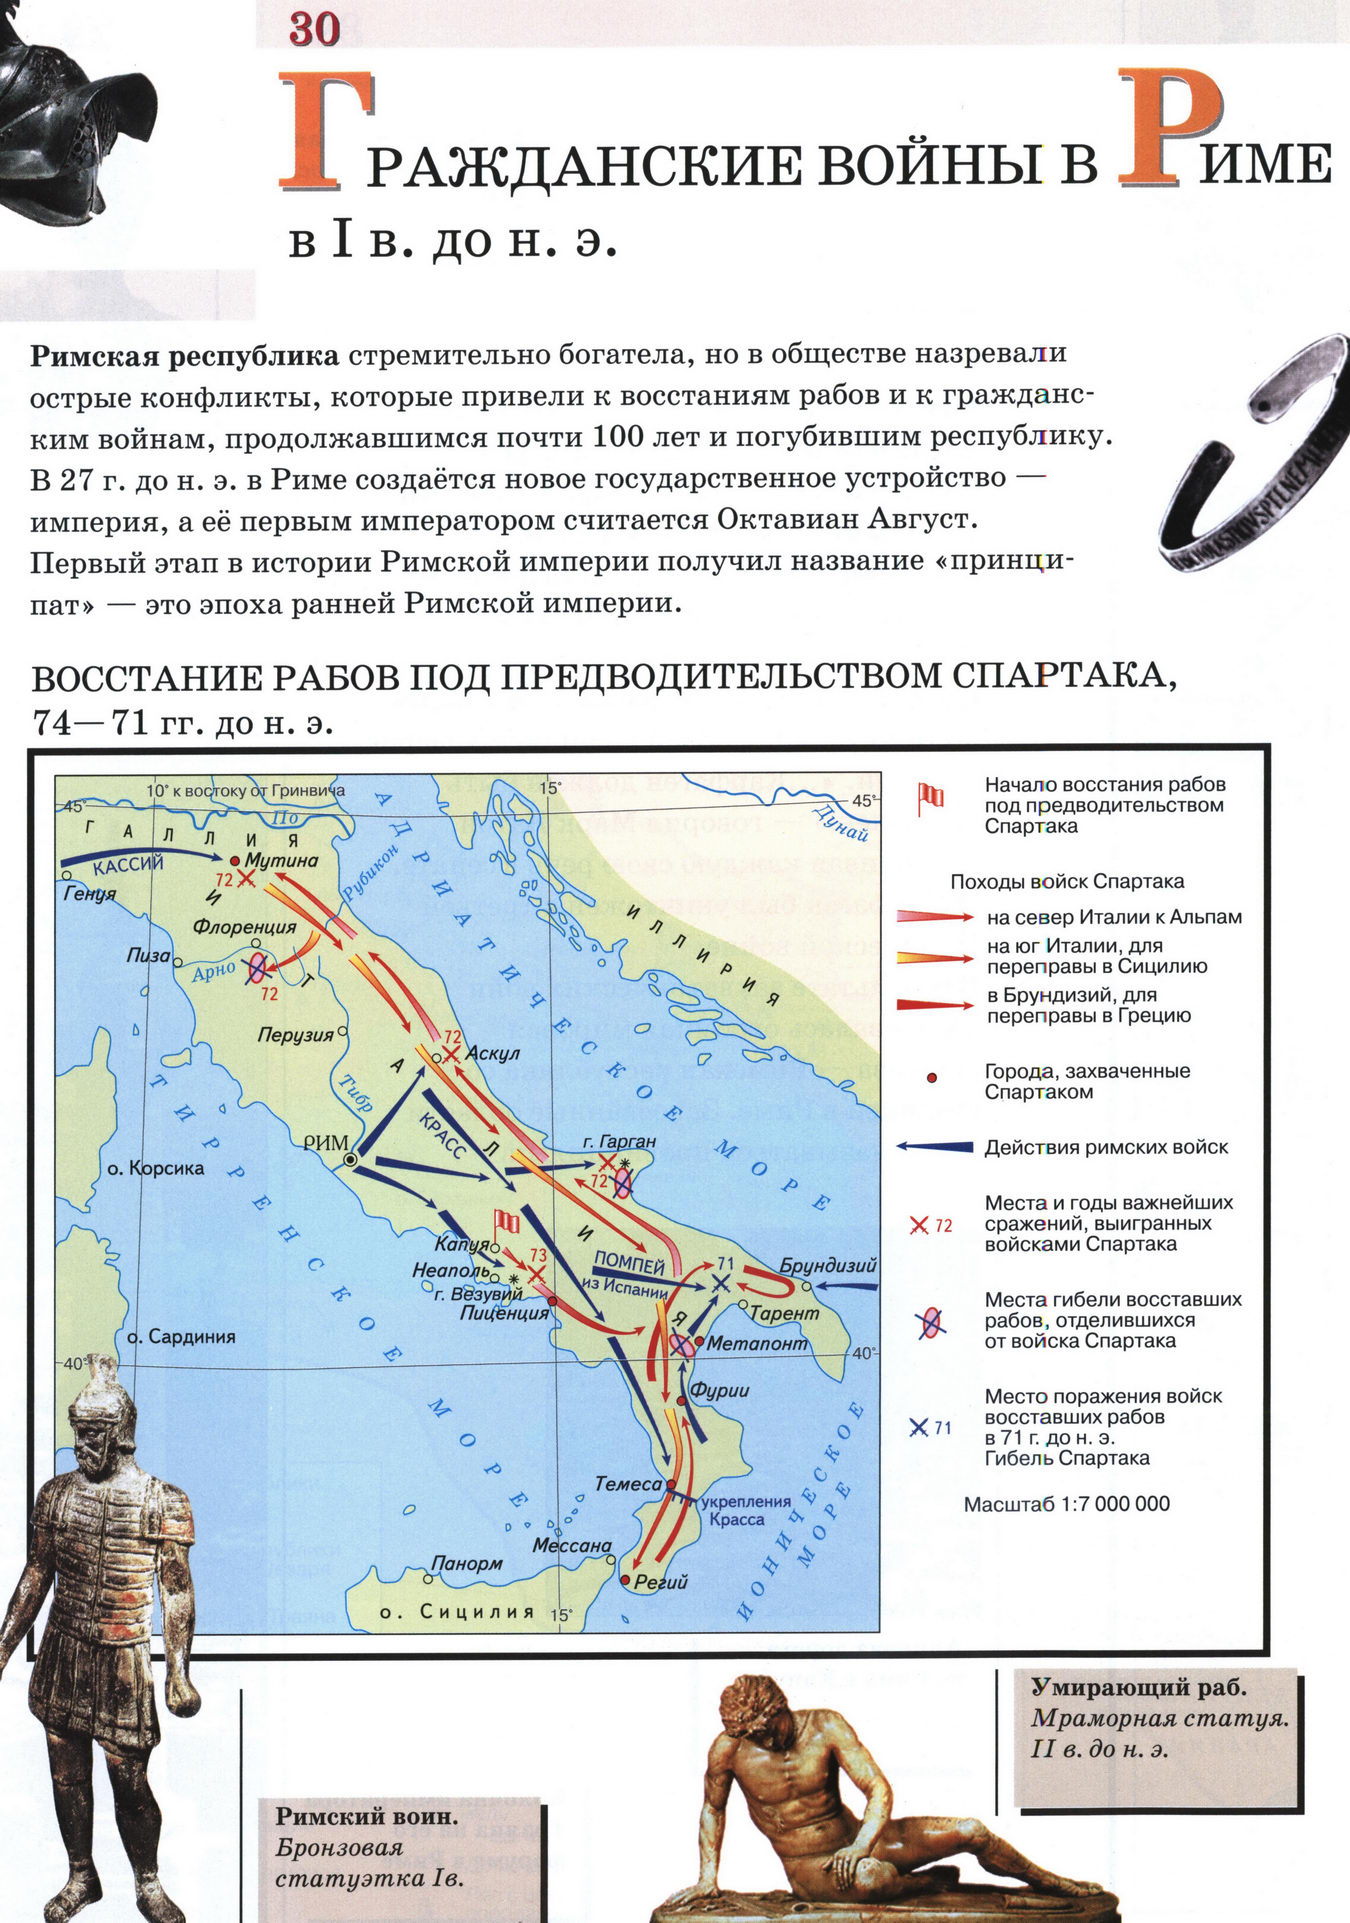 Гражданские войны в Риме - карта